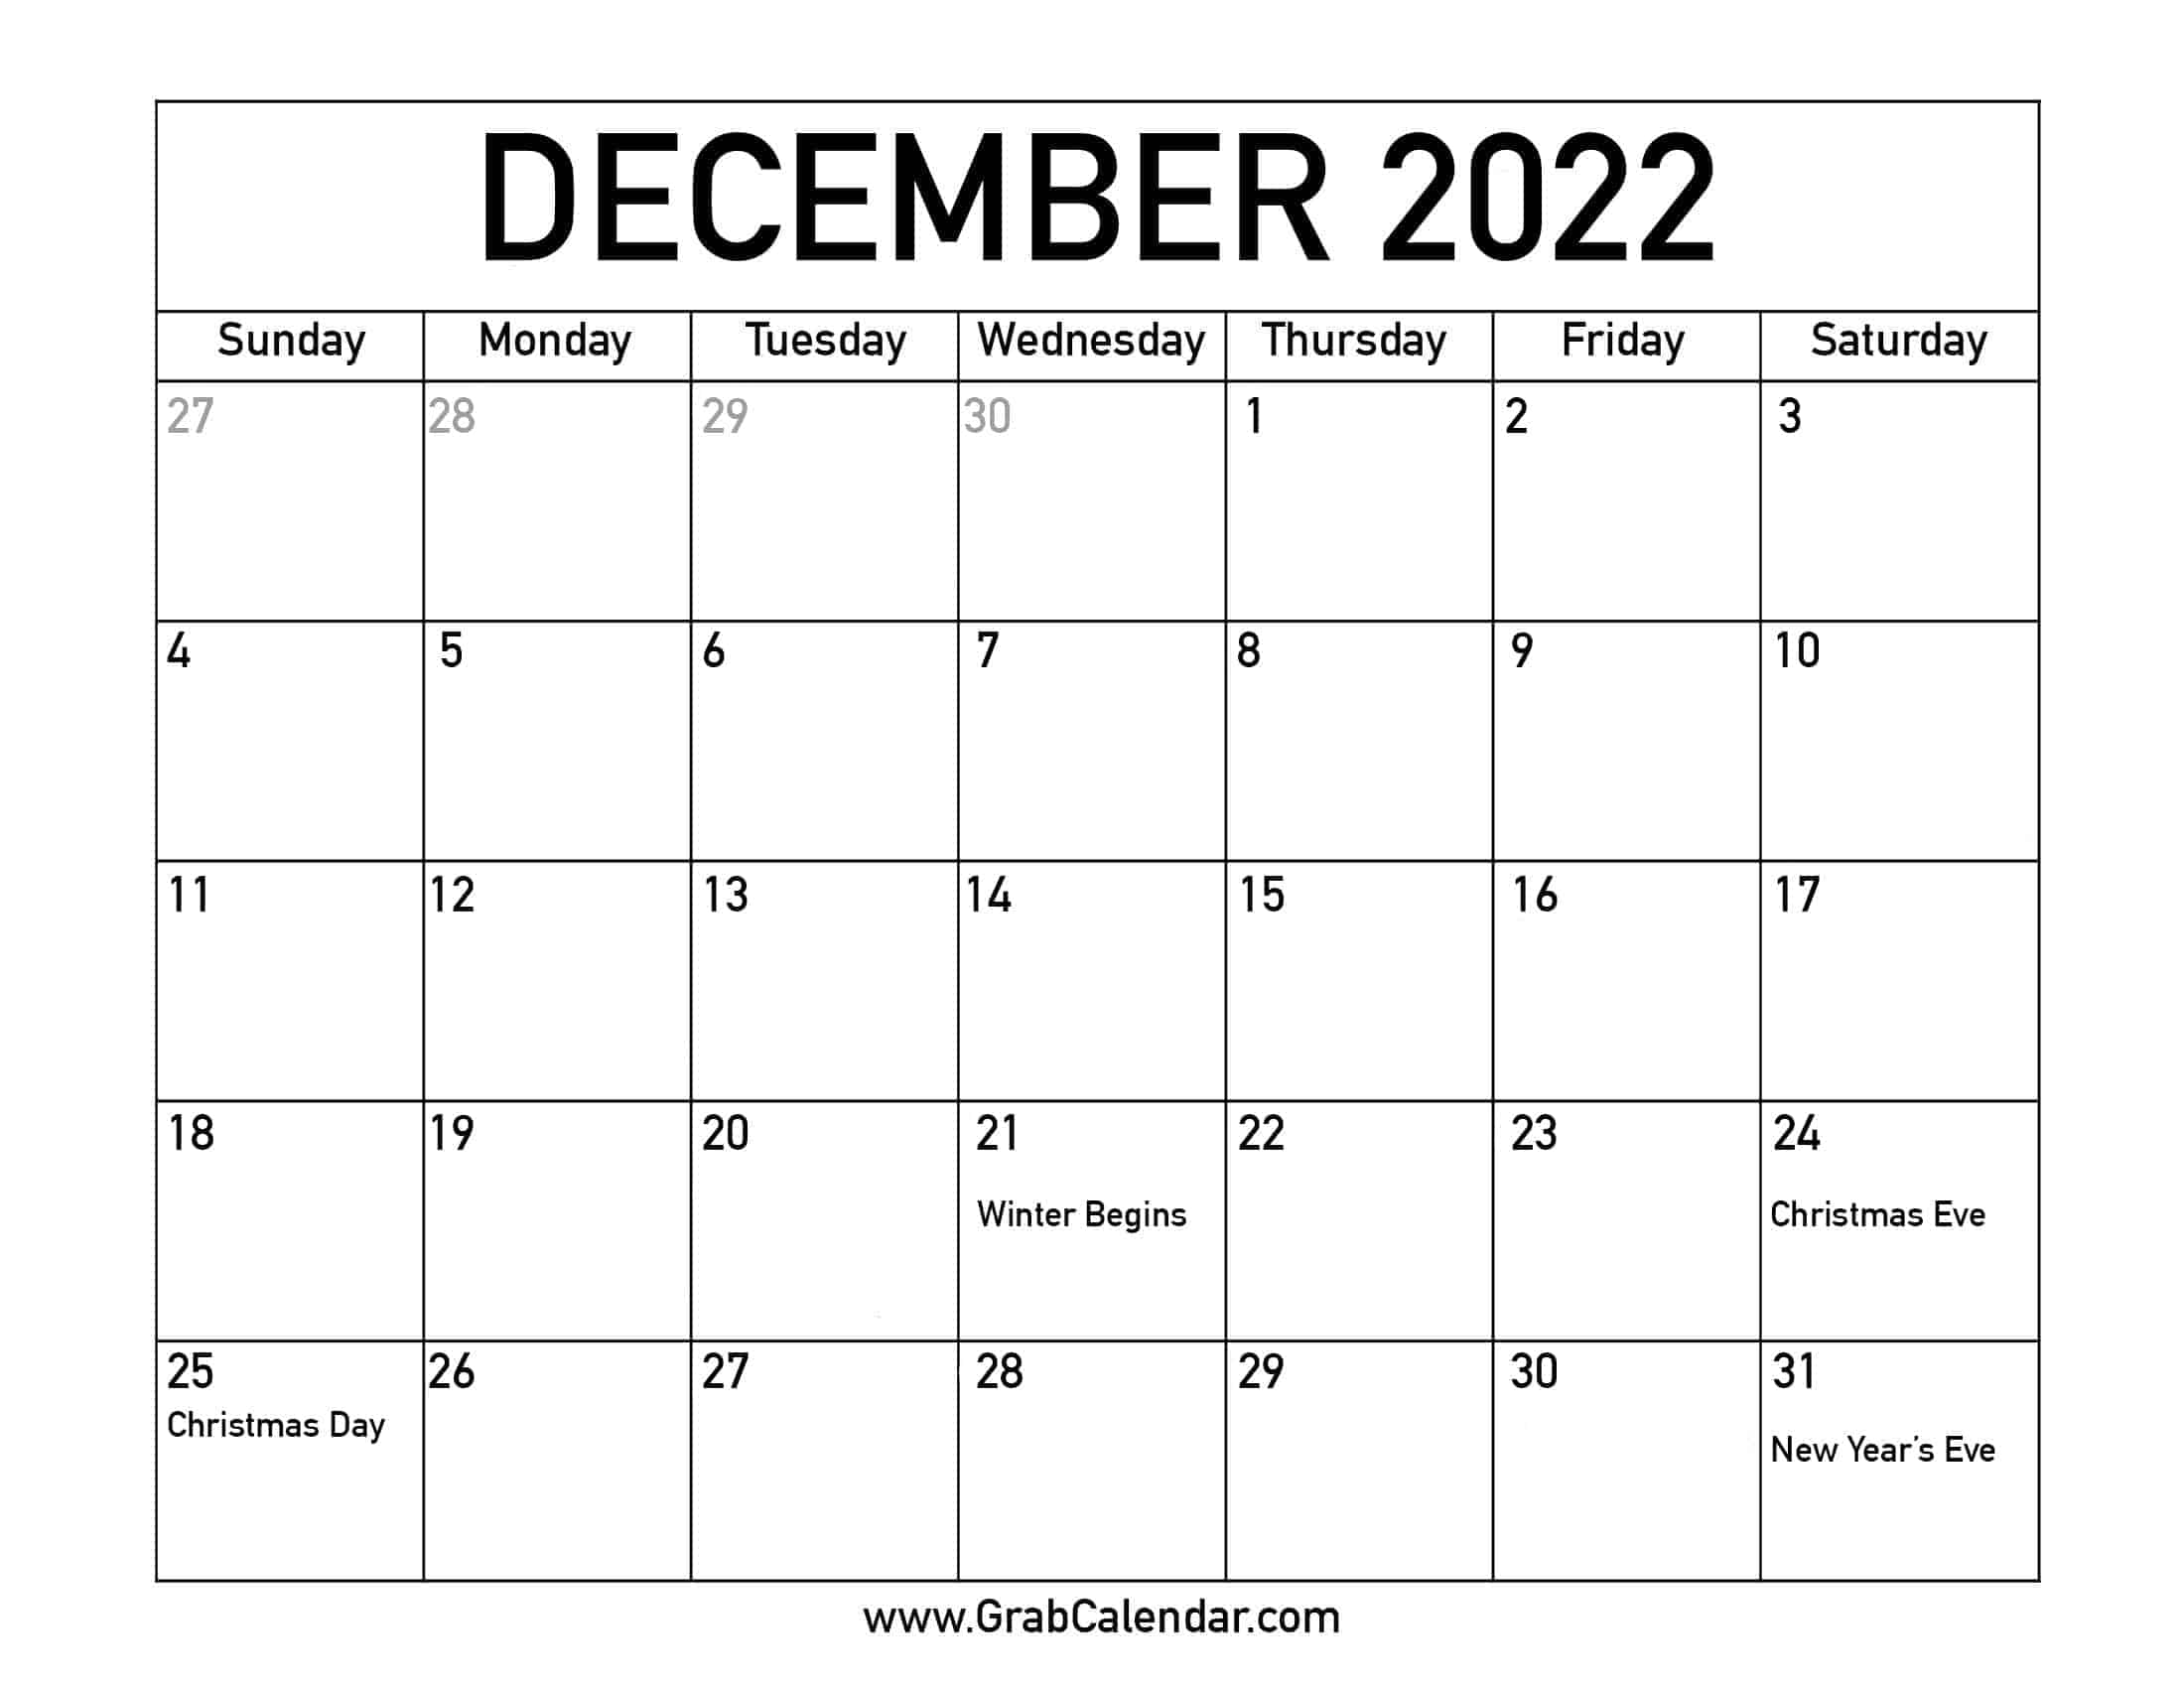 Dec 2022 Calendar With Holidays Printable December 2022 Calendar